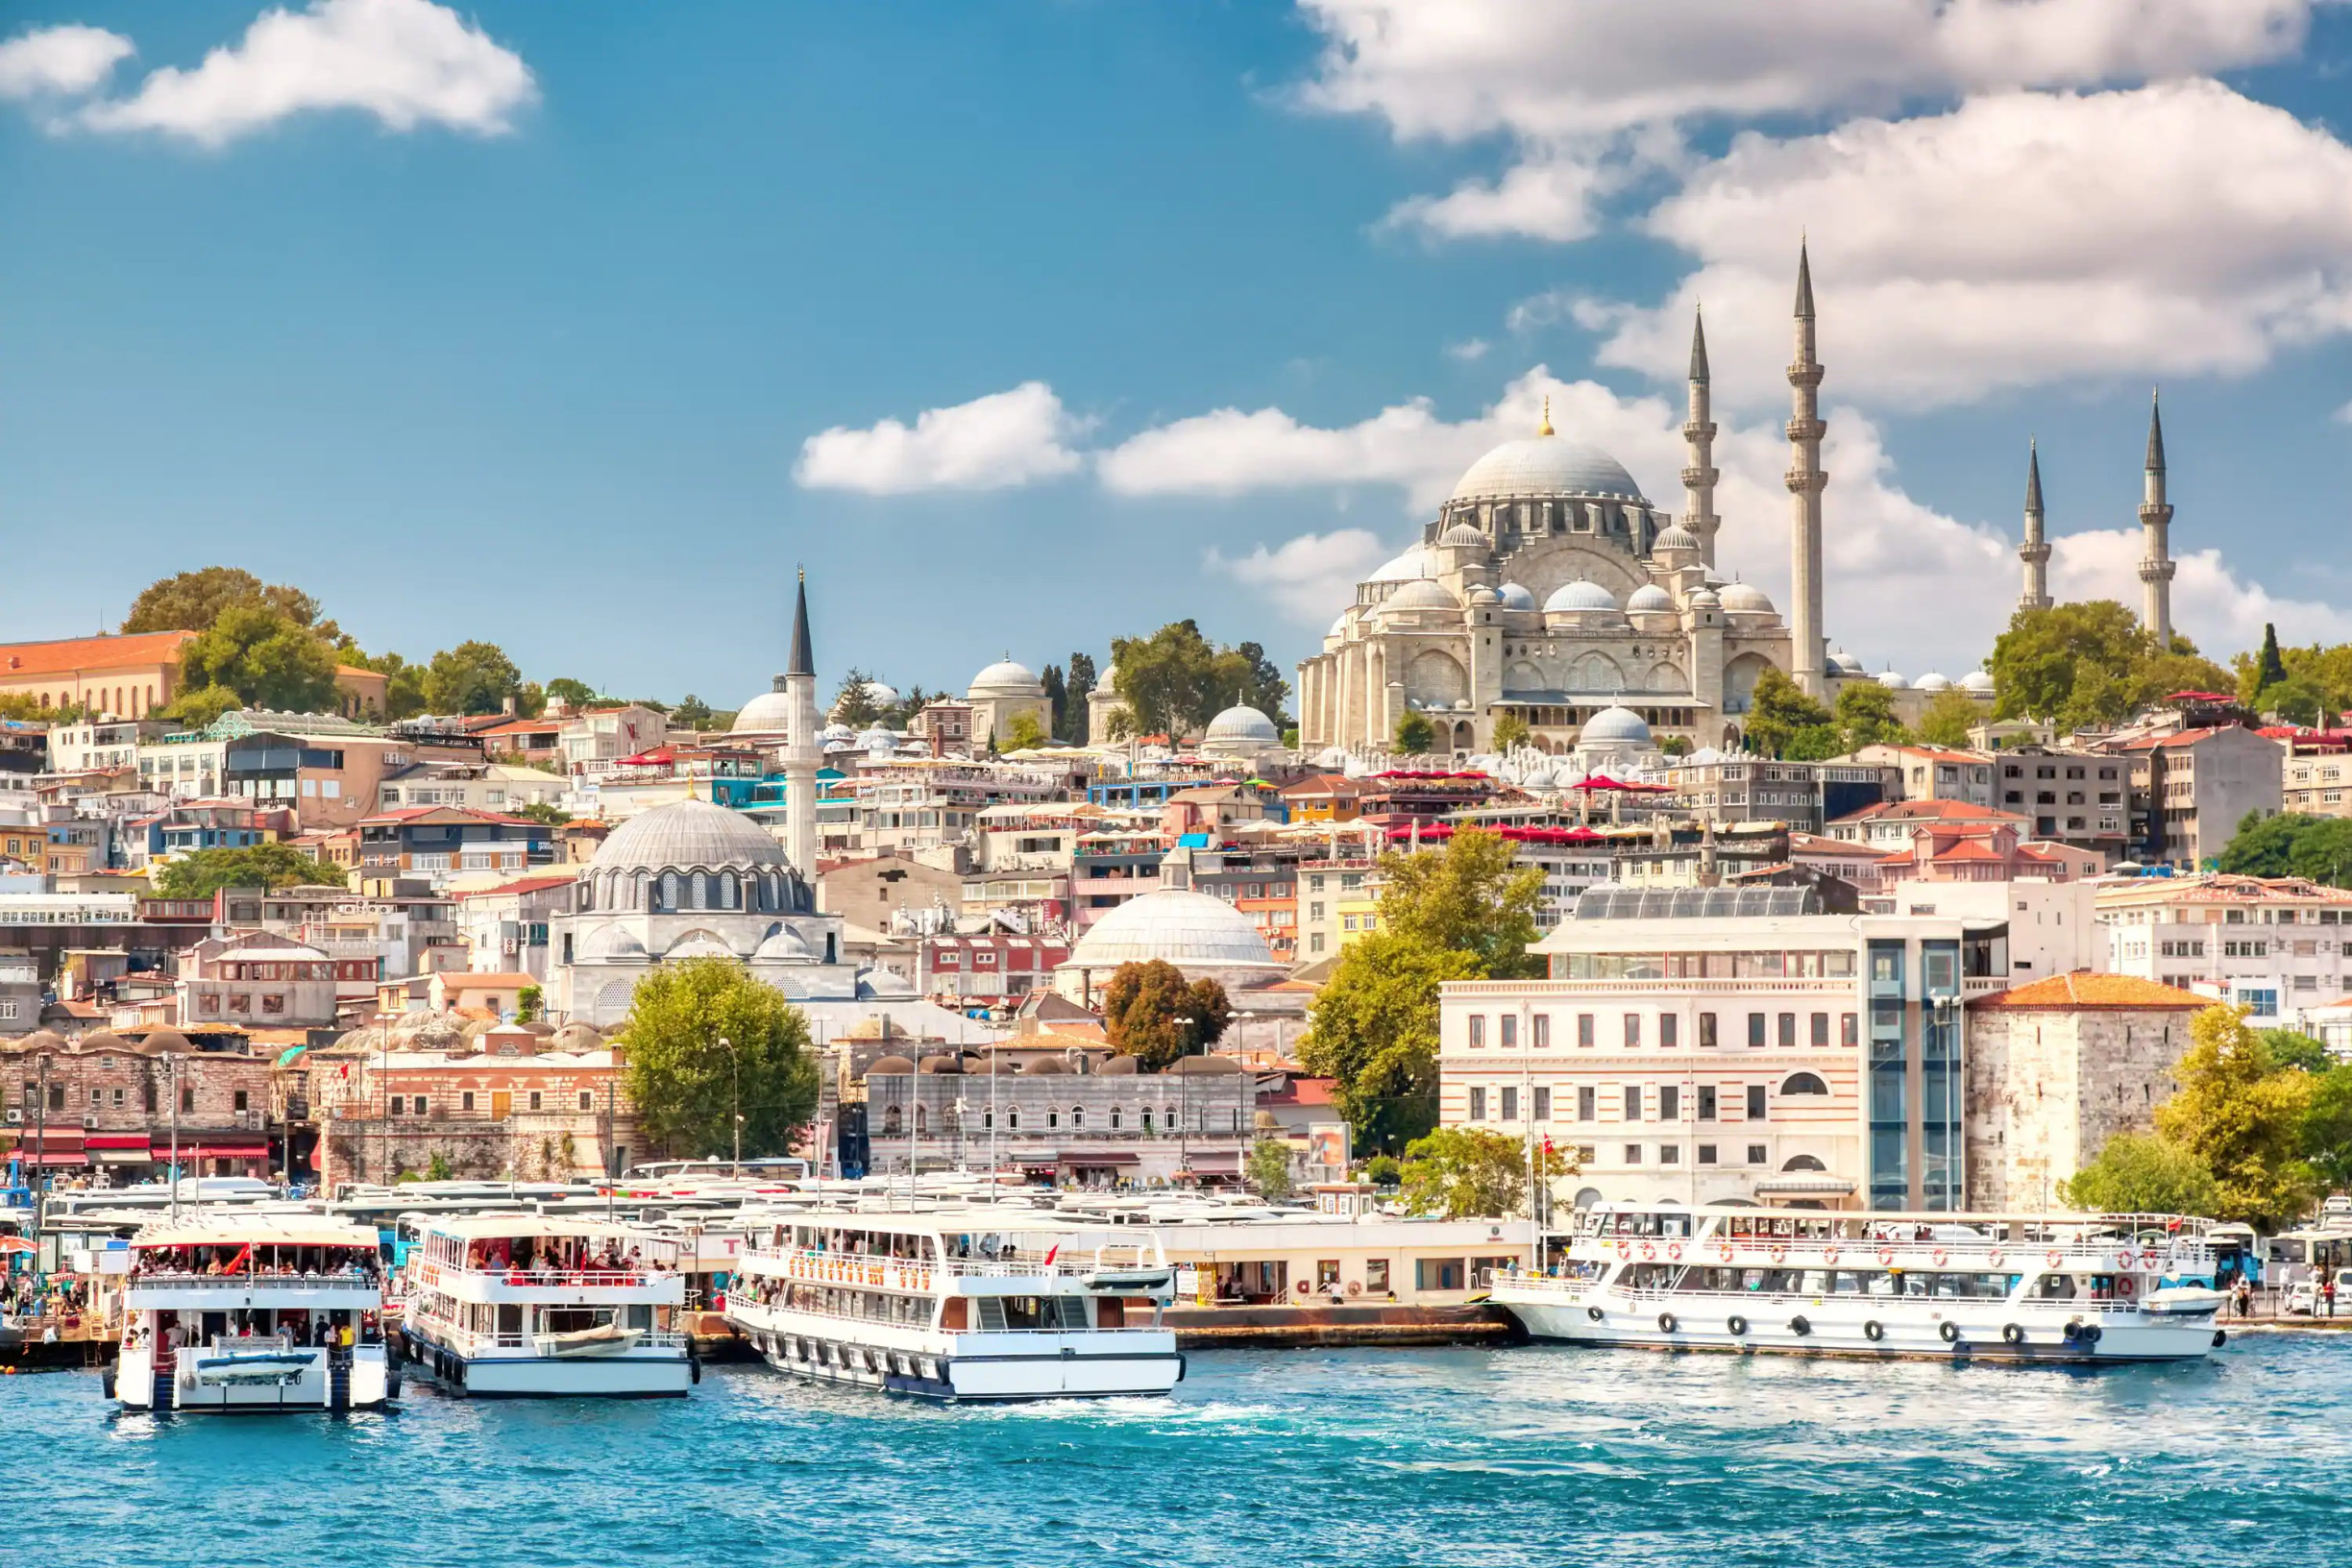 Стамбул, ранее известный как Византия, затем как Константинополь